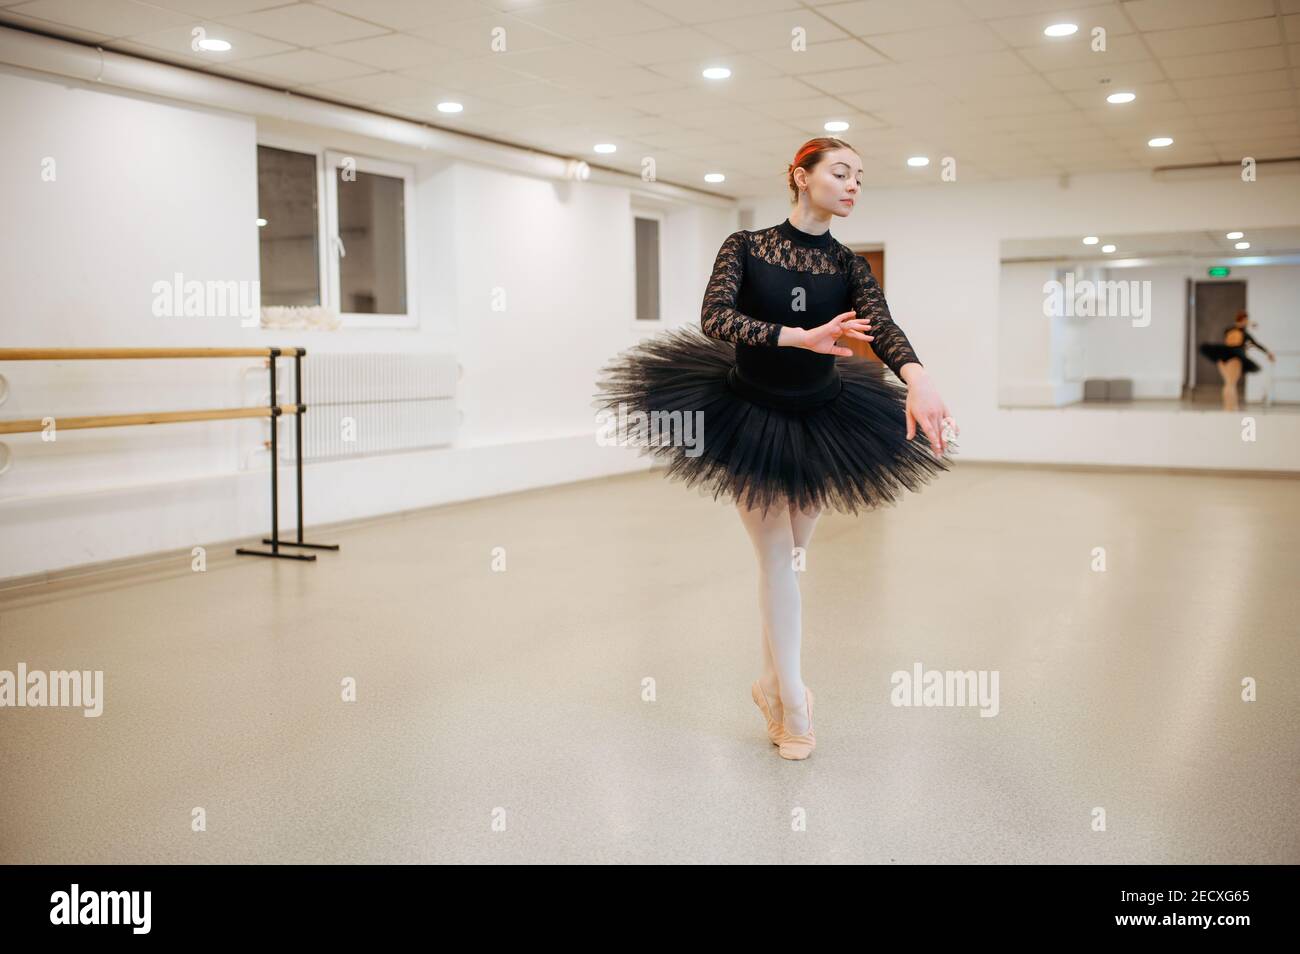 Choreographer, ballerina in class, ballet school Stock Photo